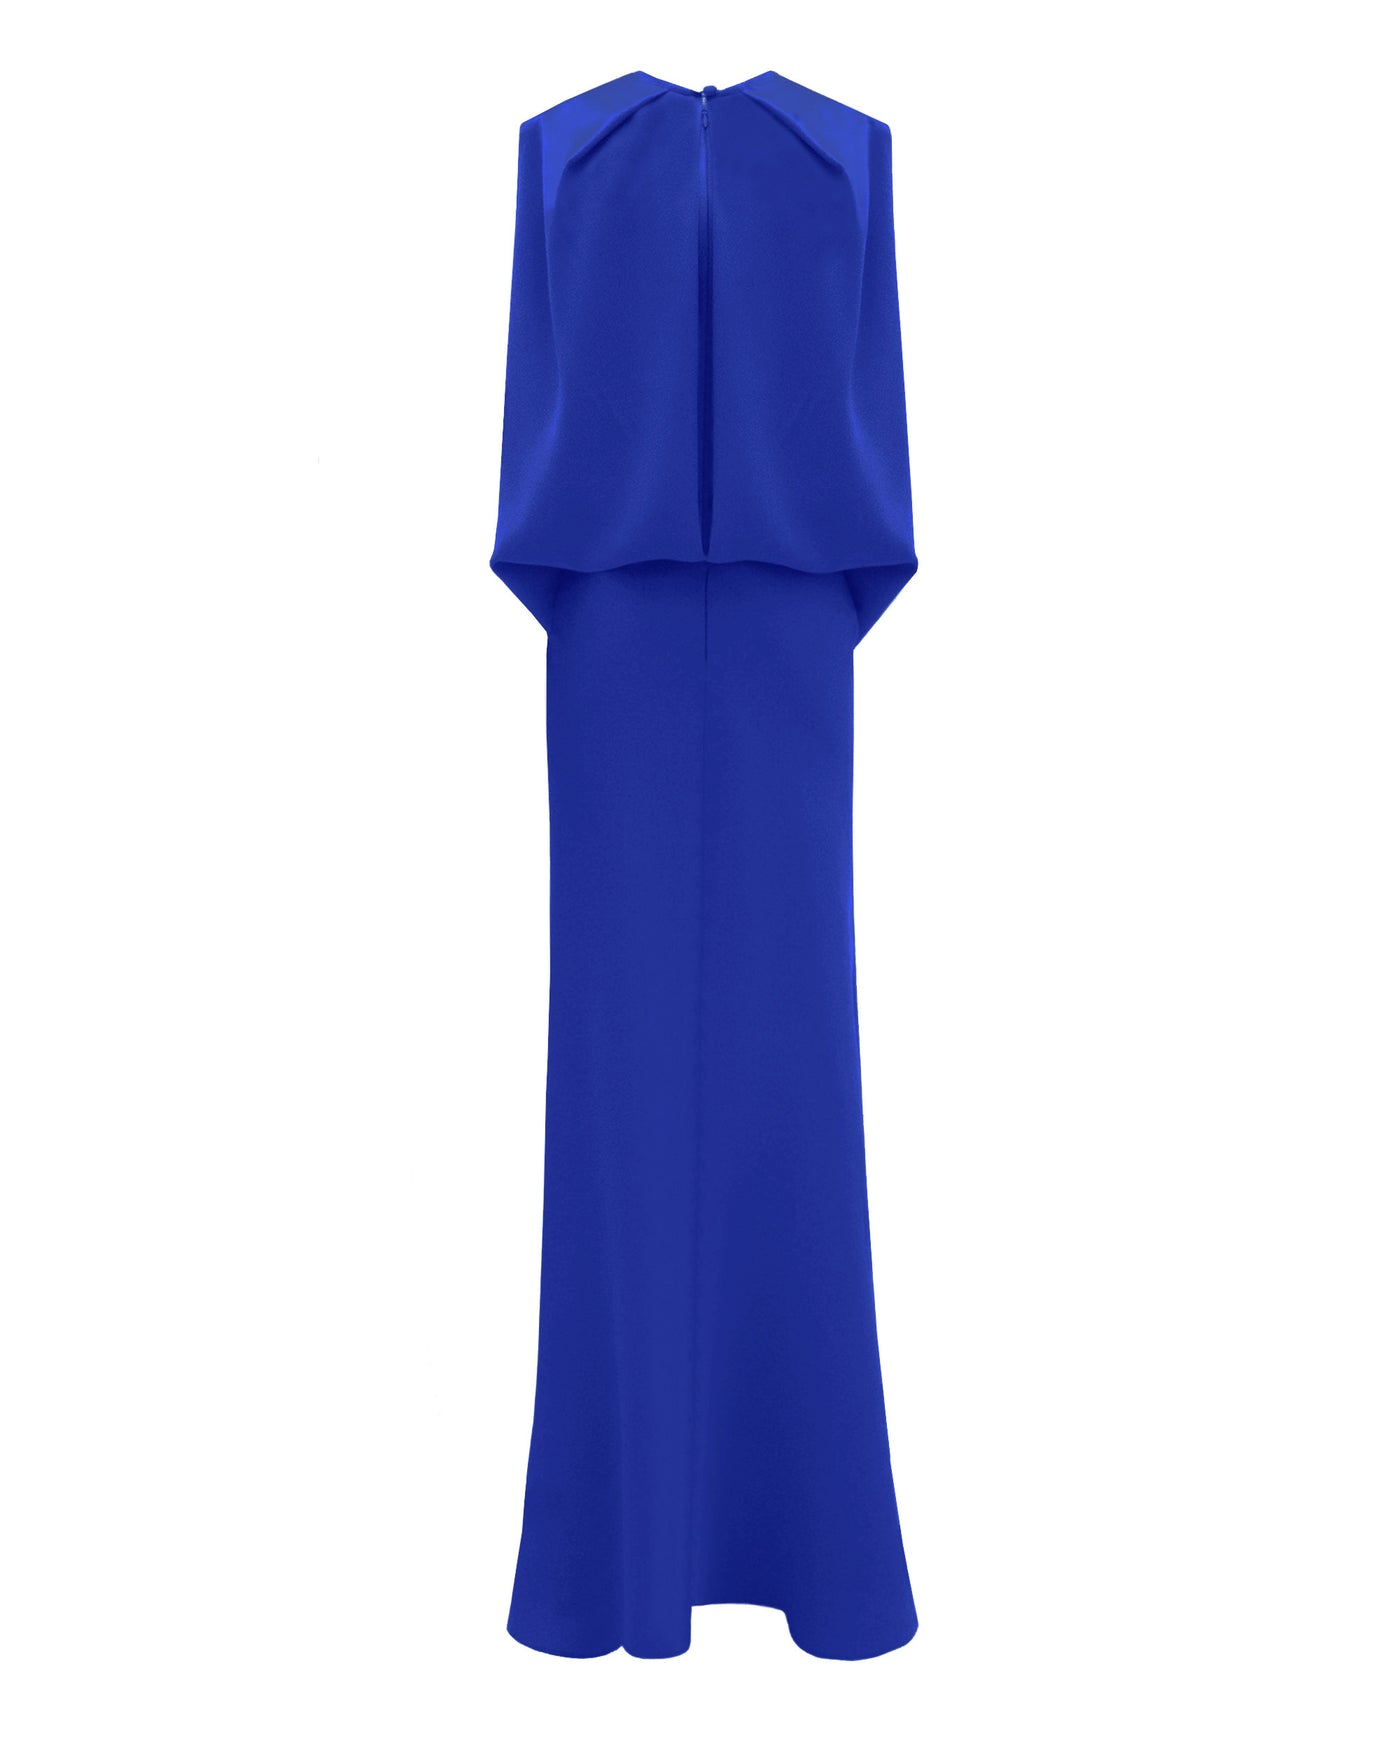 Slim Cut Royal Blue Dress